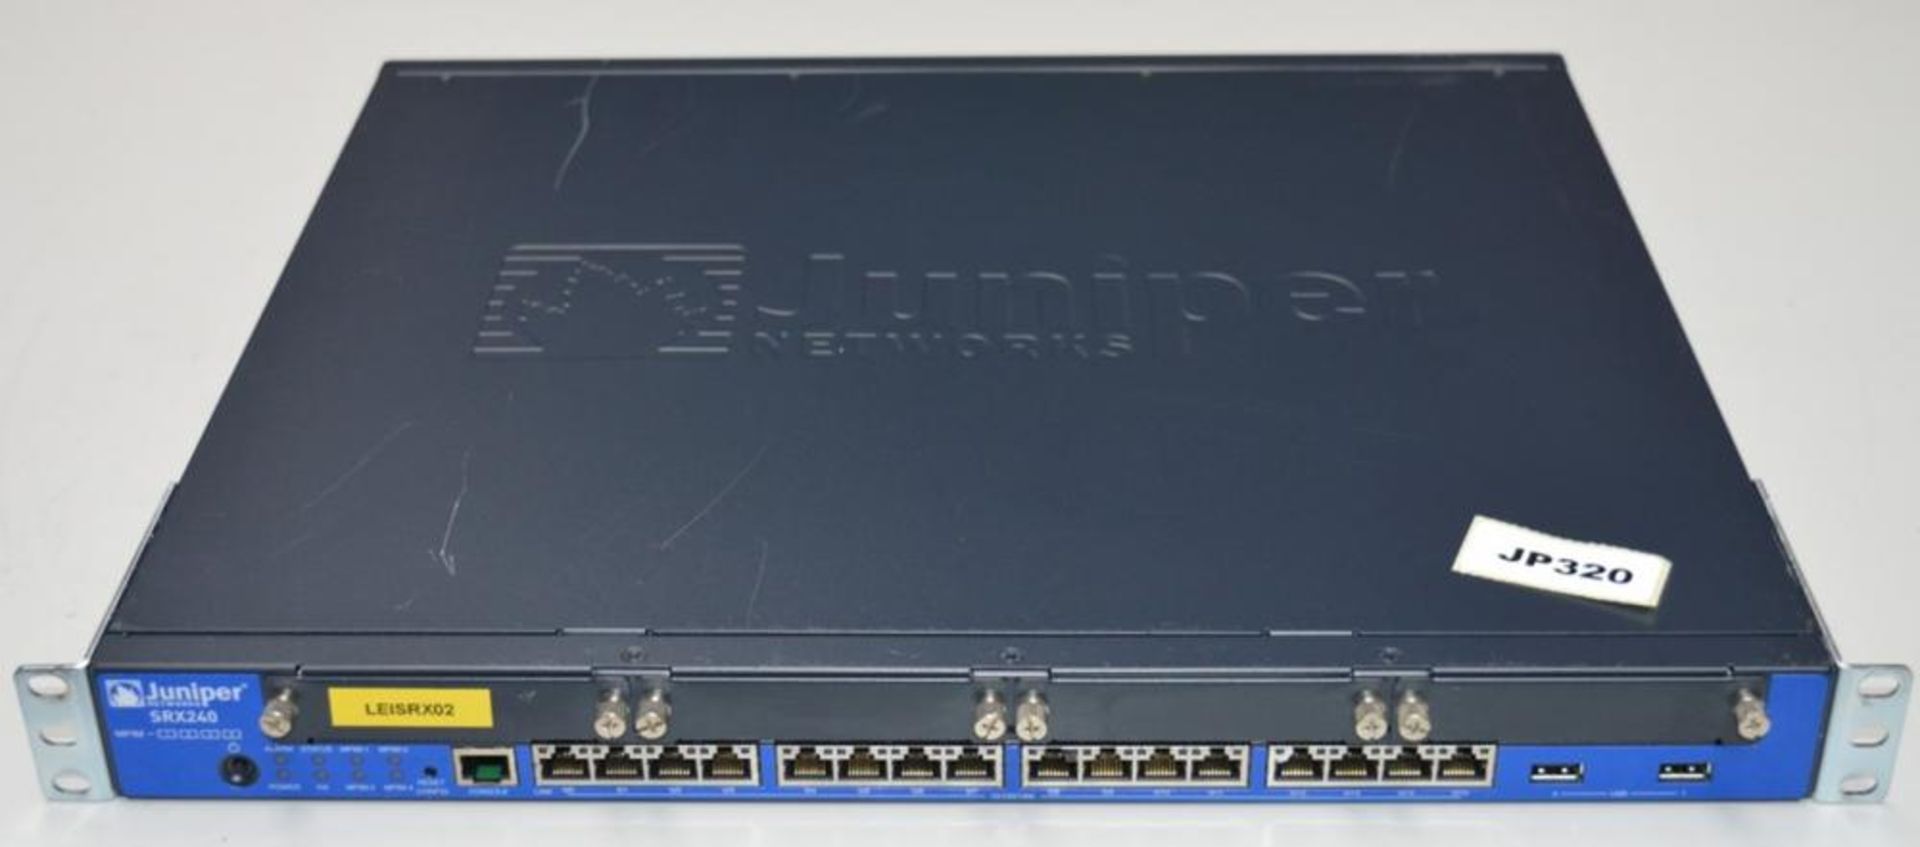 1 x Juniper SRX240H Firewall VPN Router - CL285 - Ref JP320 F2 - Location: Altrincham WA14